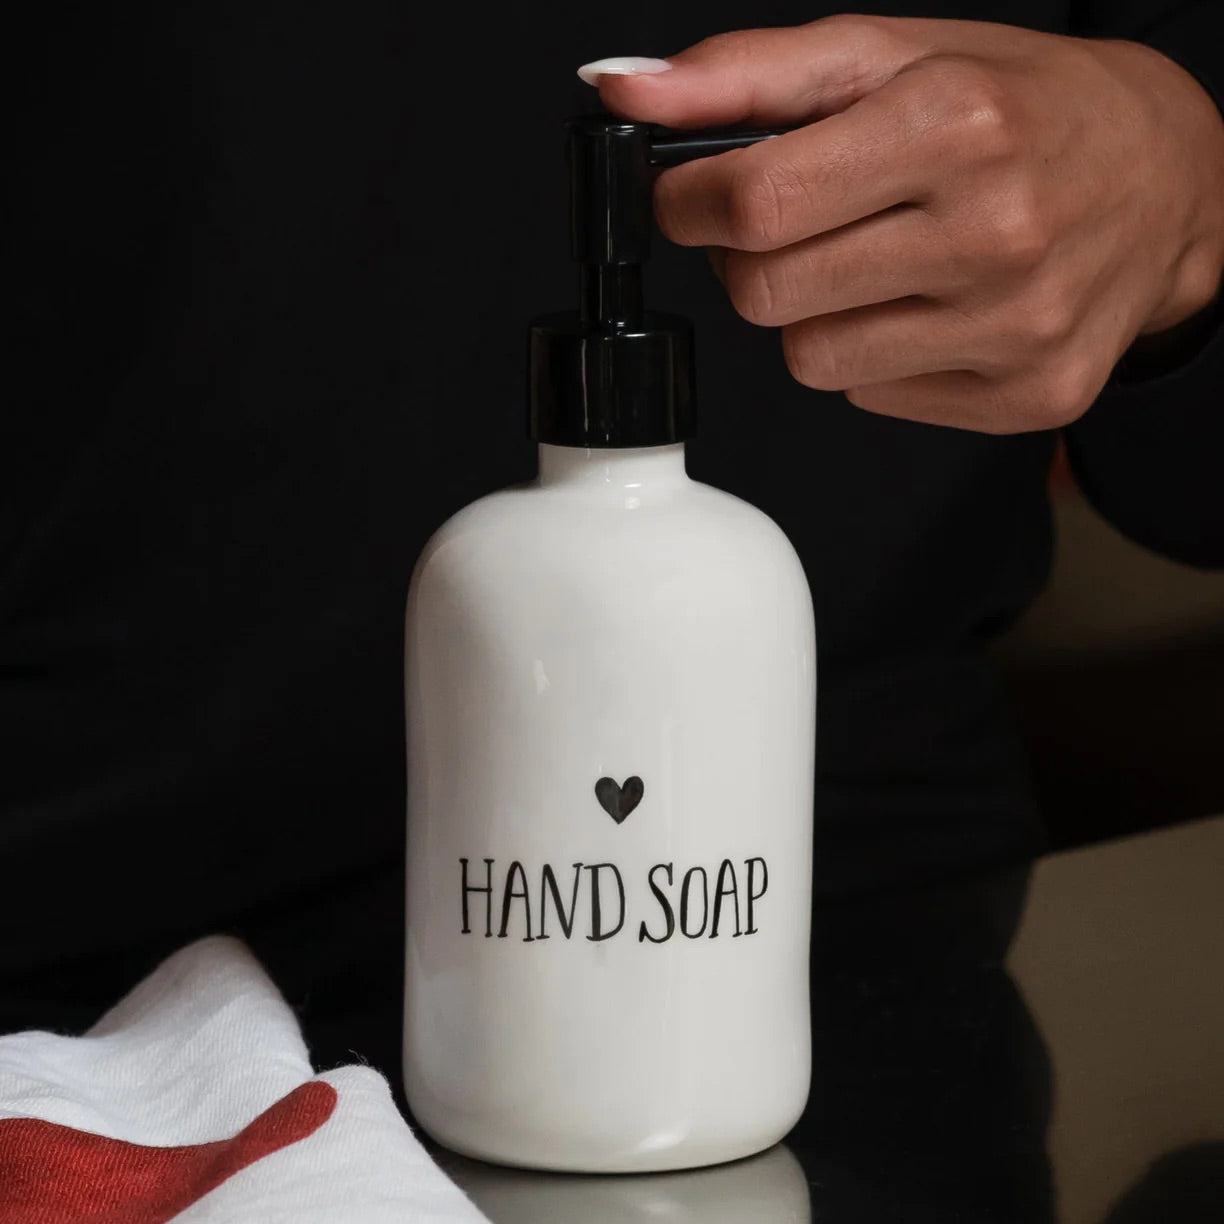 Dosasapone Hand Soap